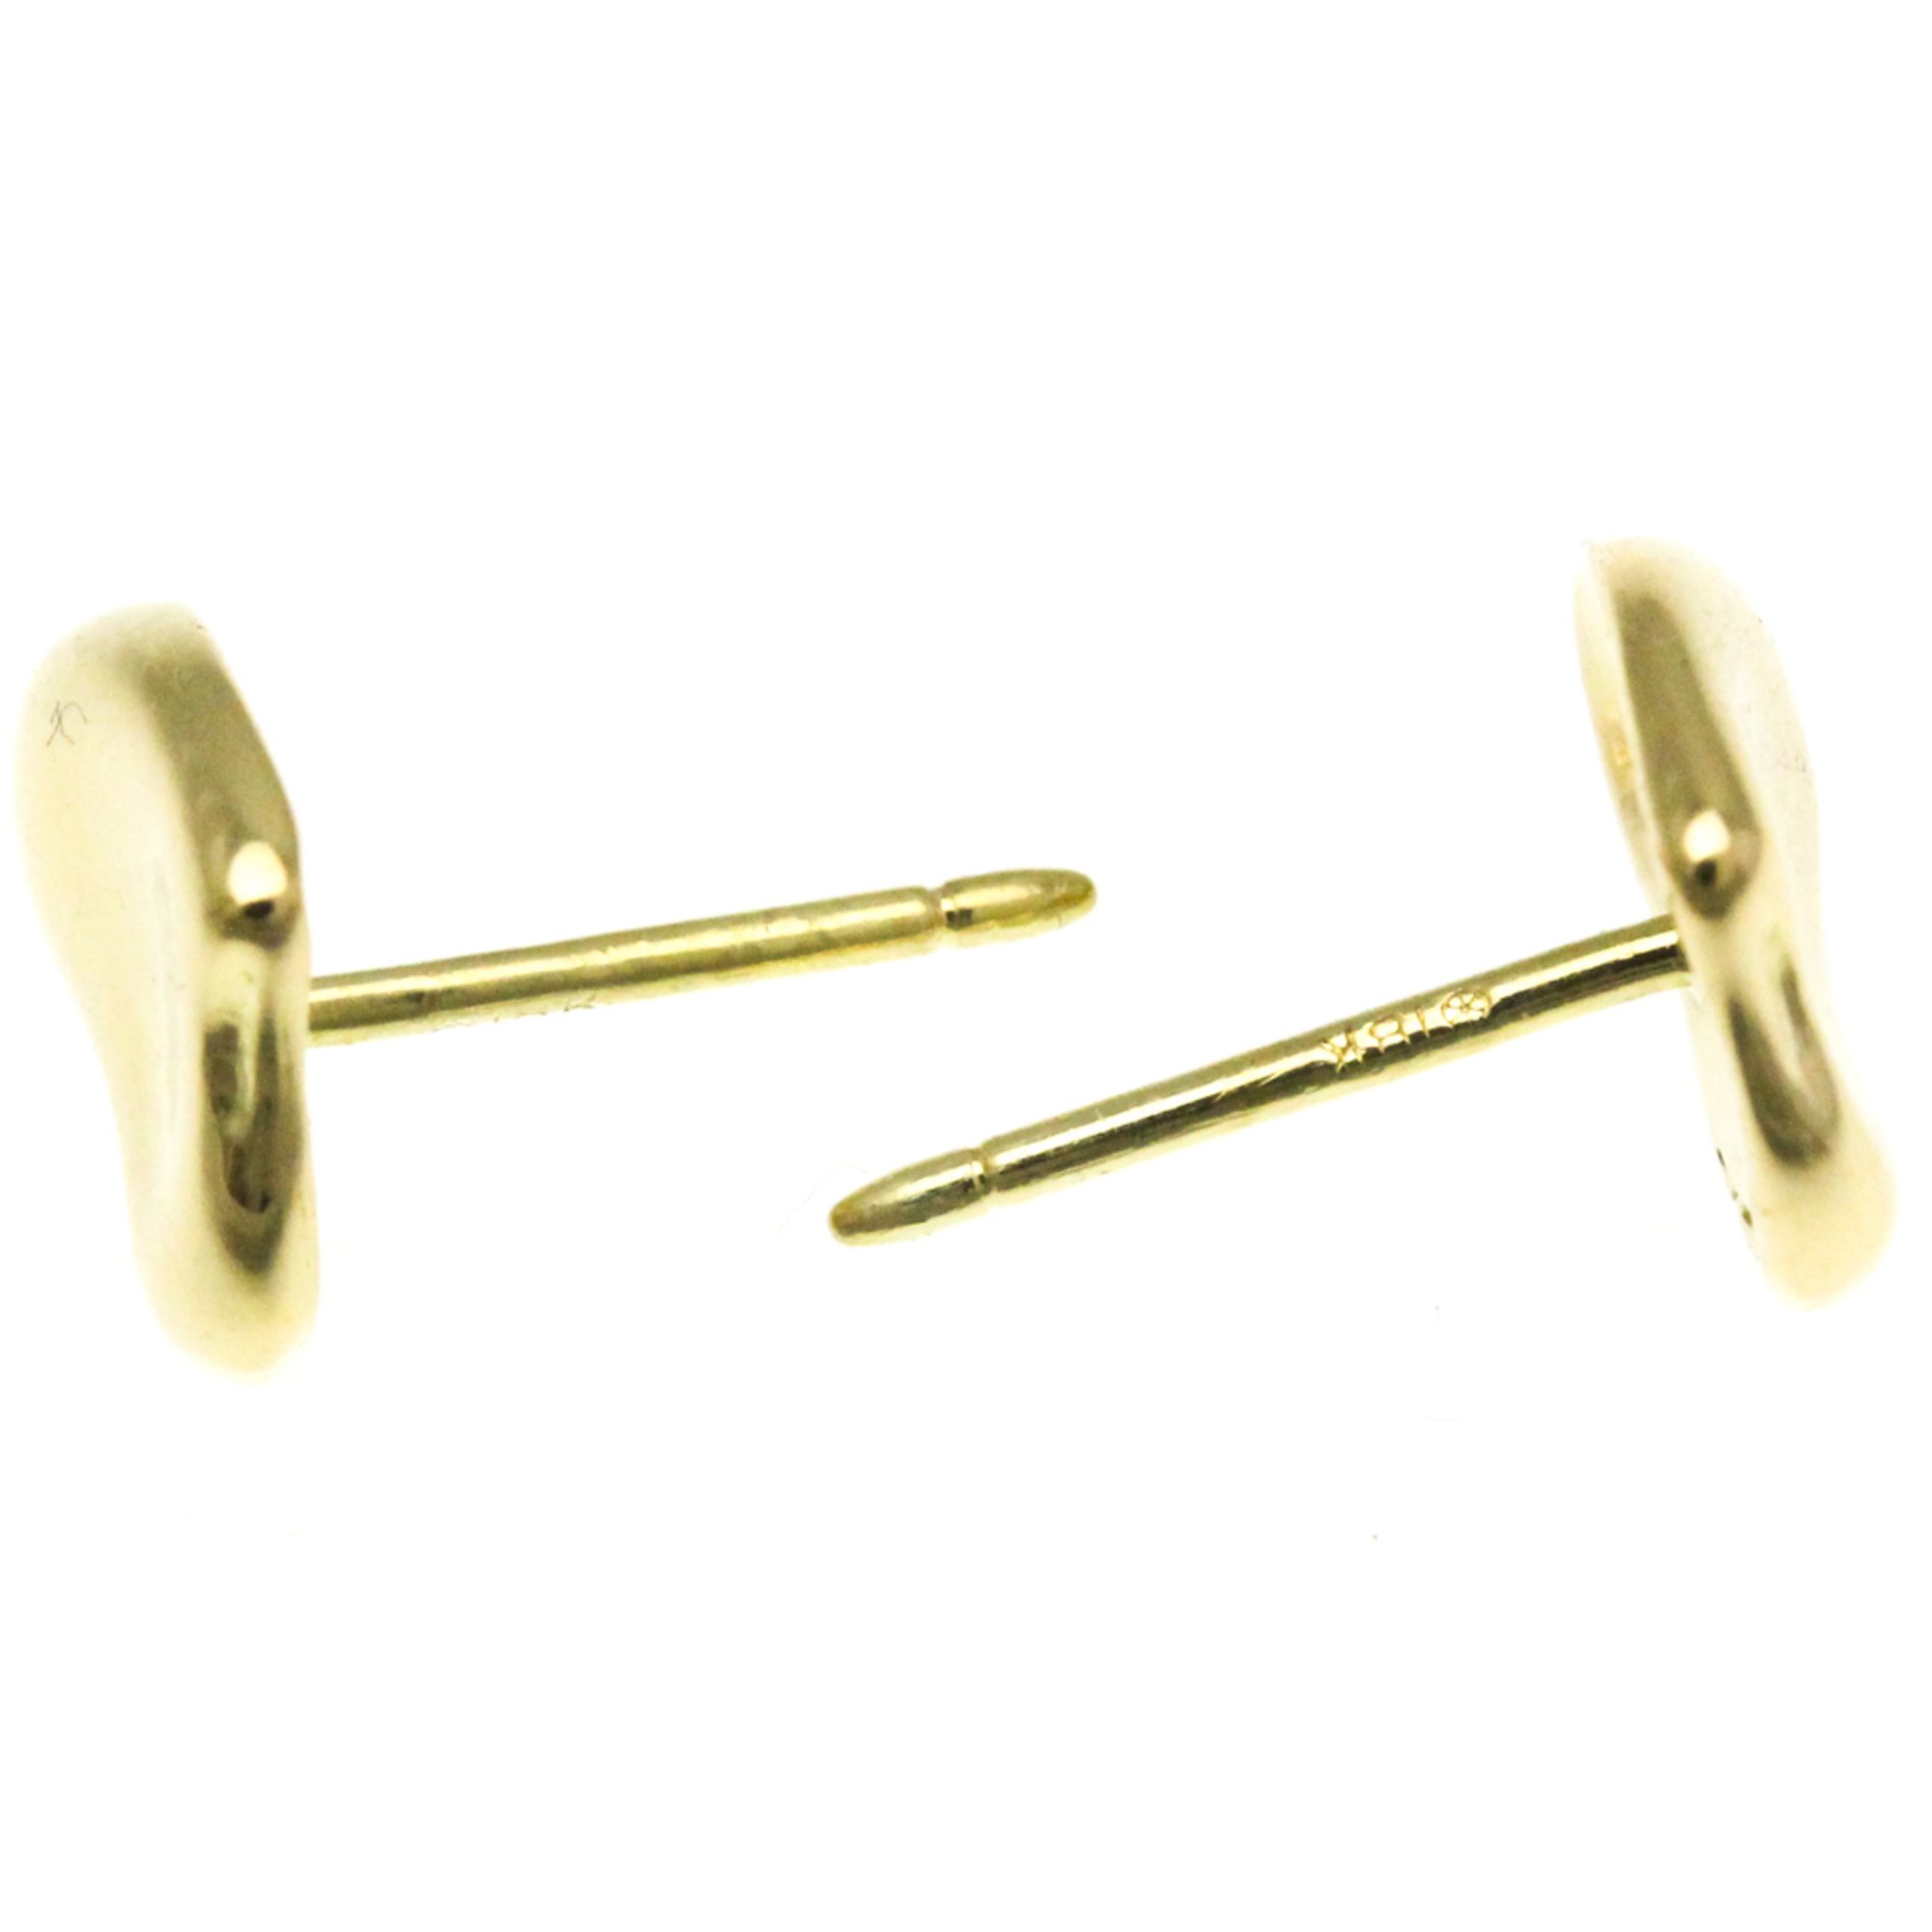 Tiffany Full Heart Earrings Yellow Gold (18K) Stud Earrings Gold BF570581